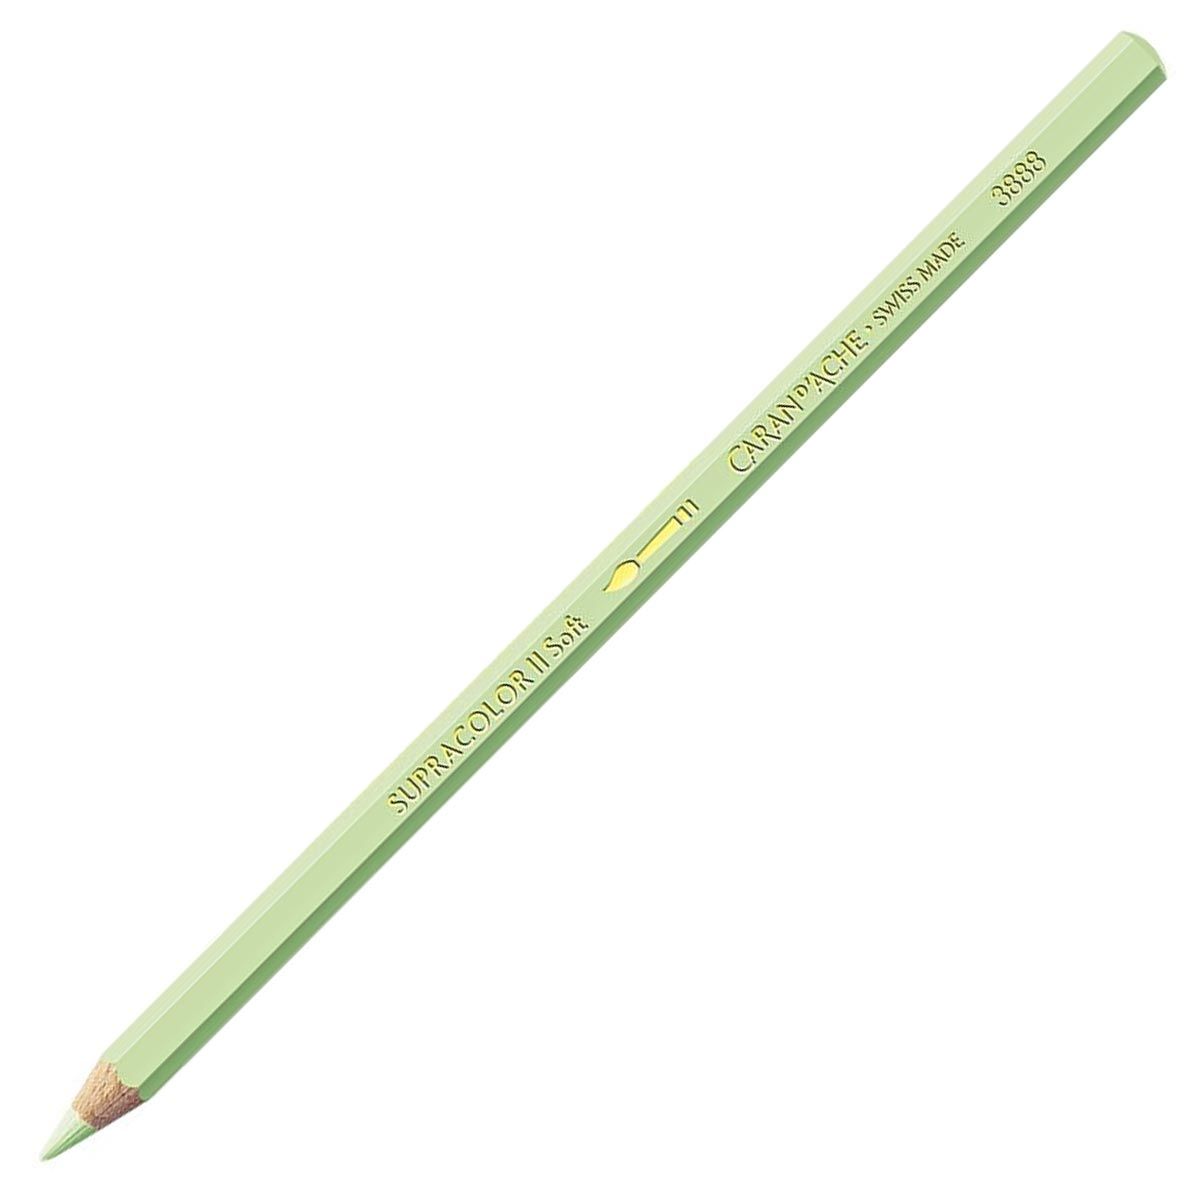 Caran d'Ache Supracolor ll Soft Aquarelle Pencil - Lime Green 231